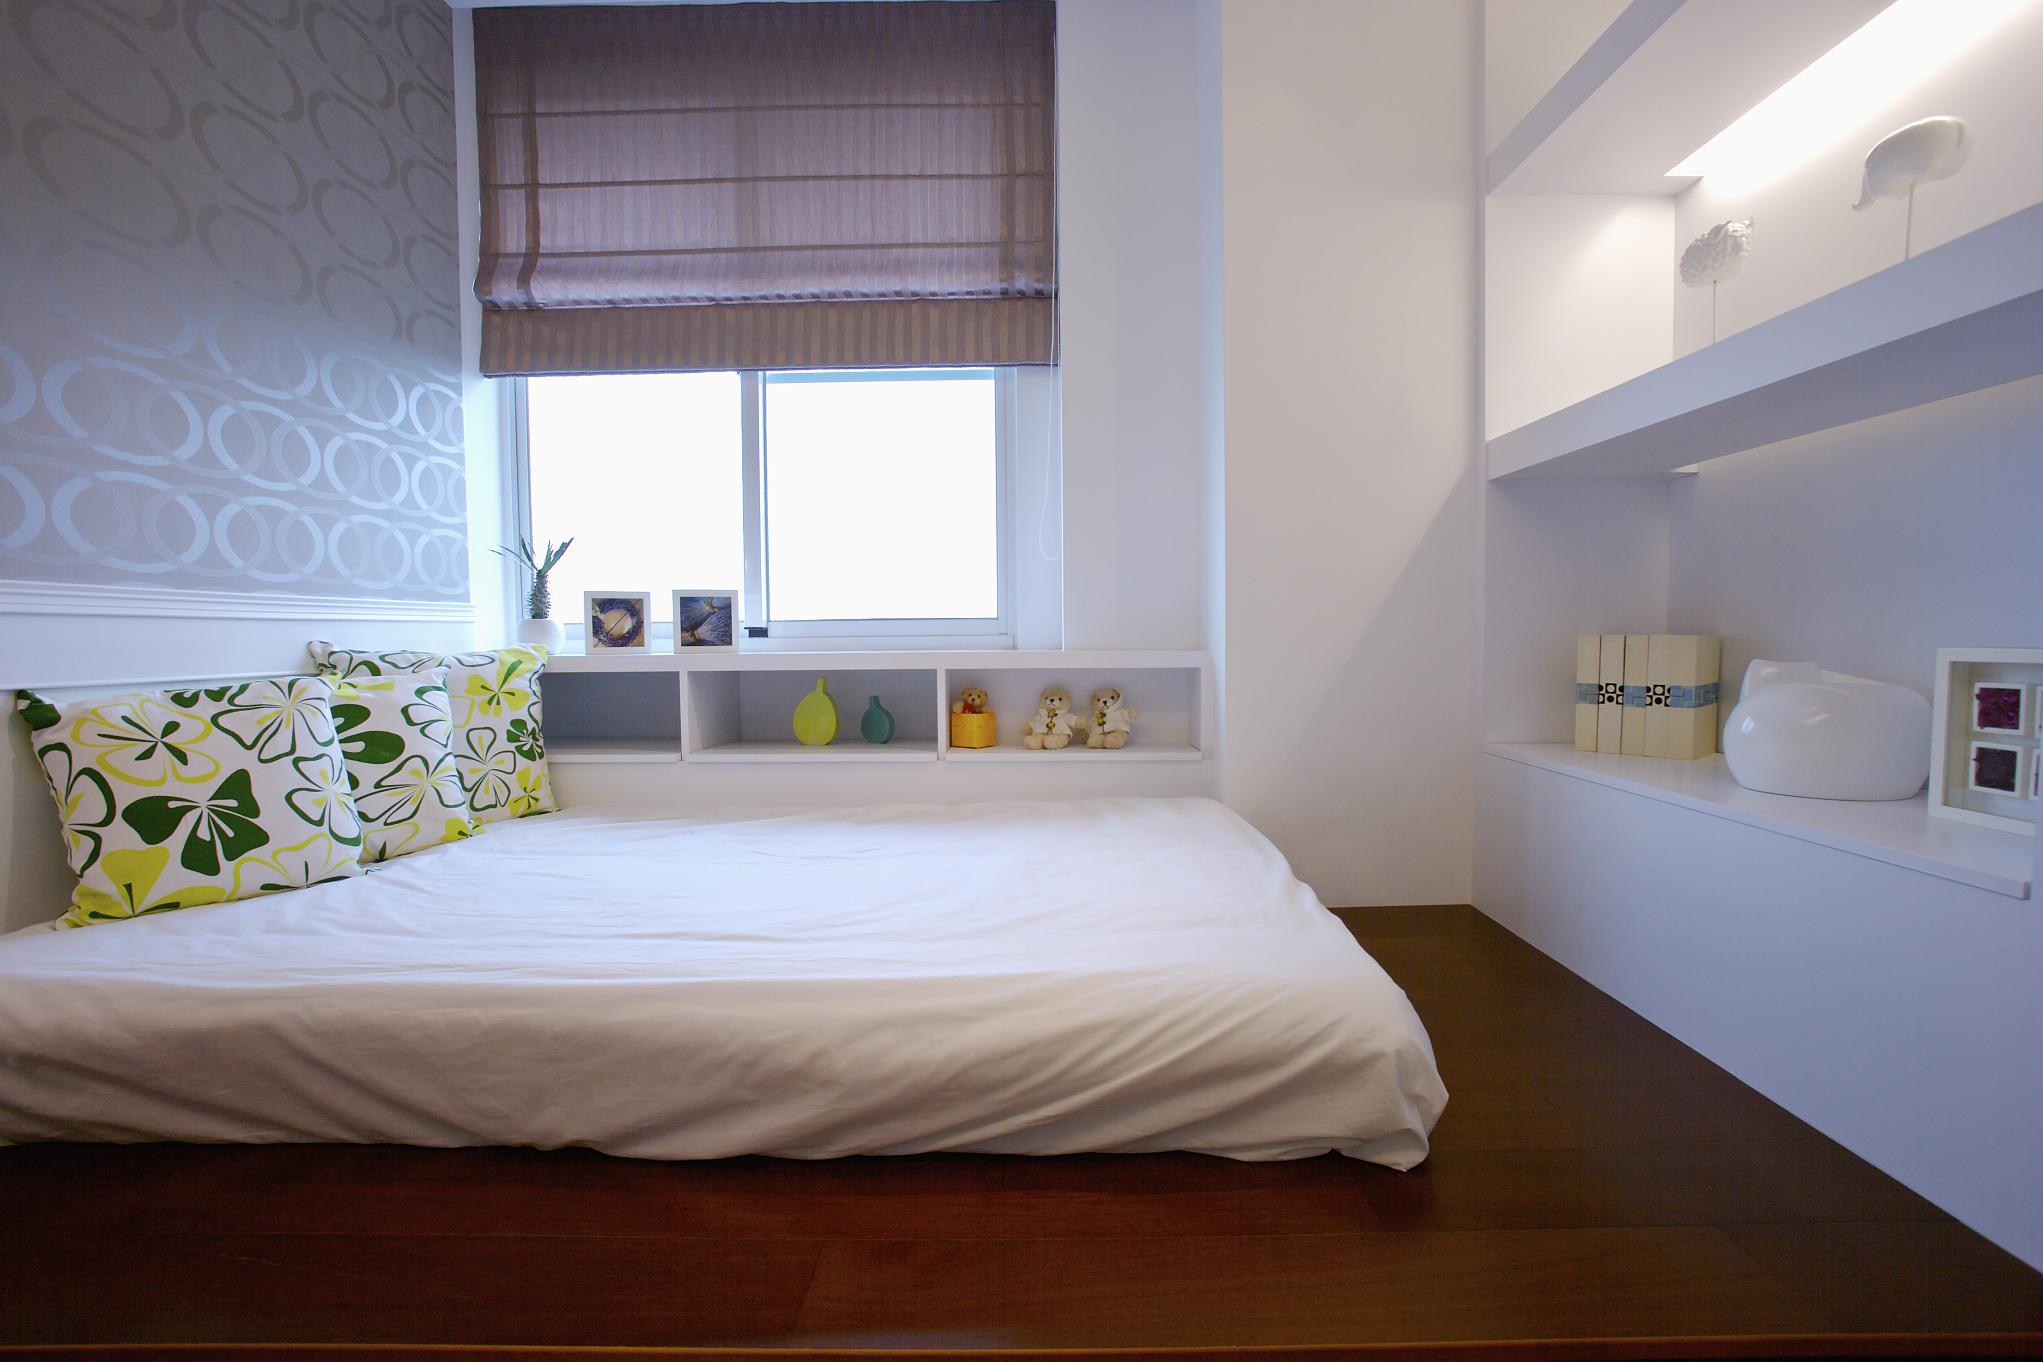 小卧室装修攻略 装修不到10平米的卧室需要考虑空间利用,功能布局和